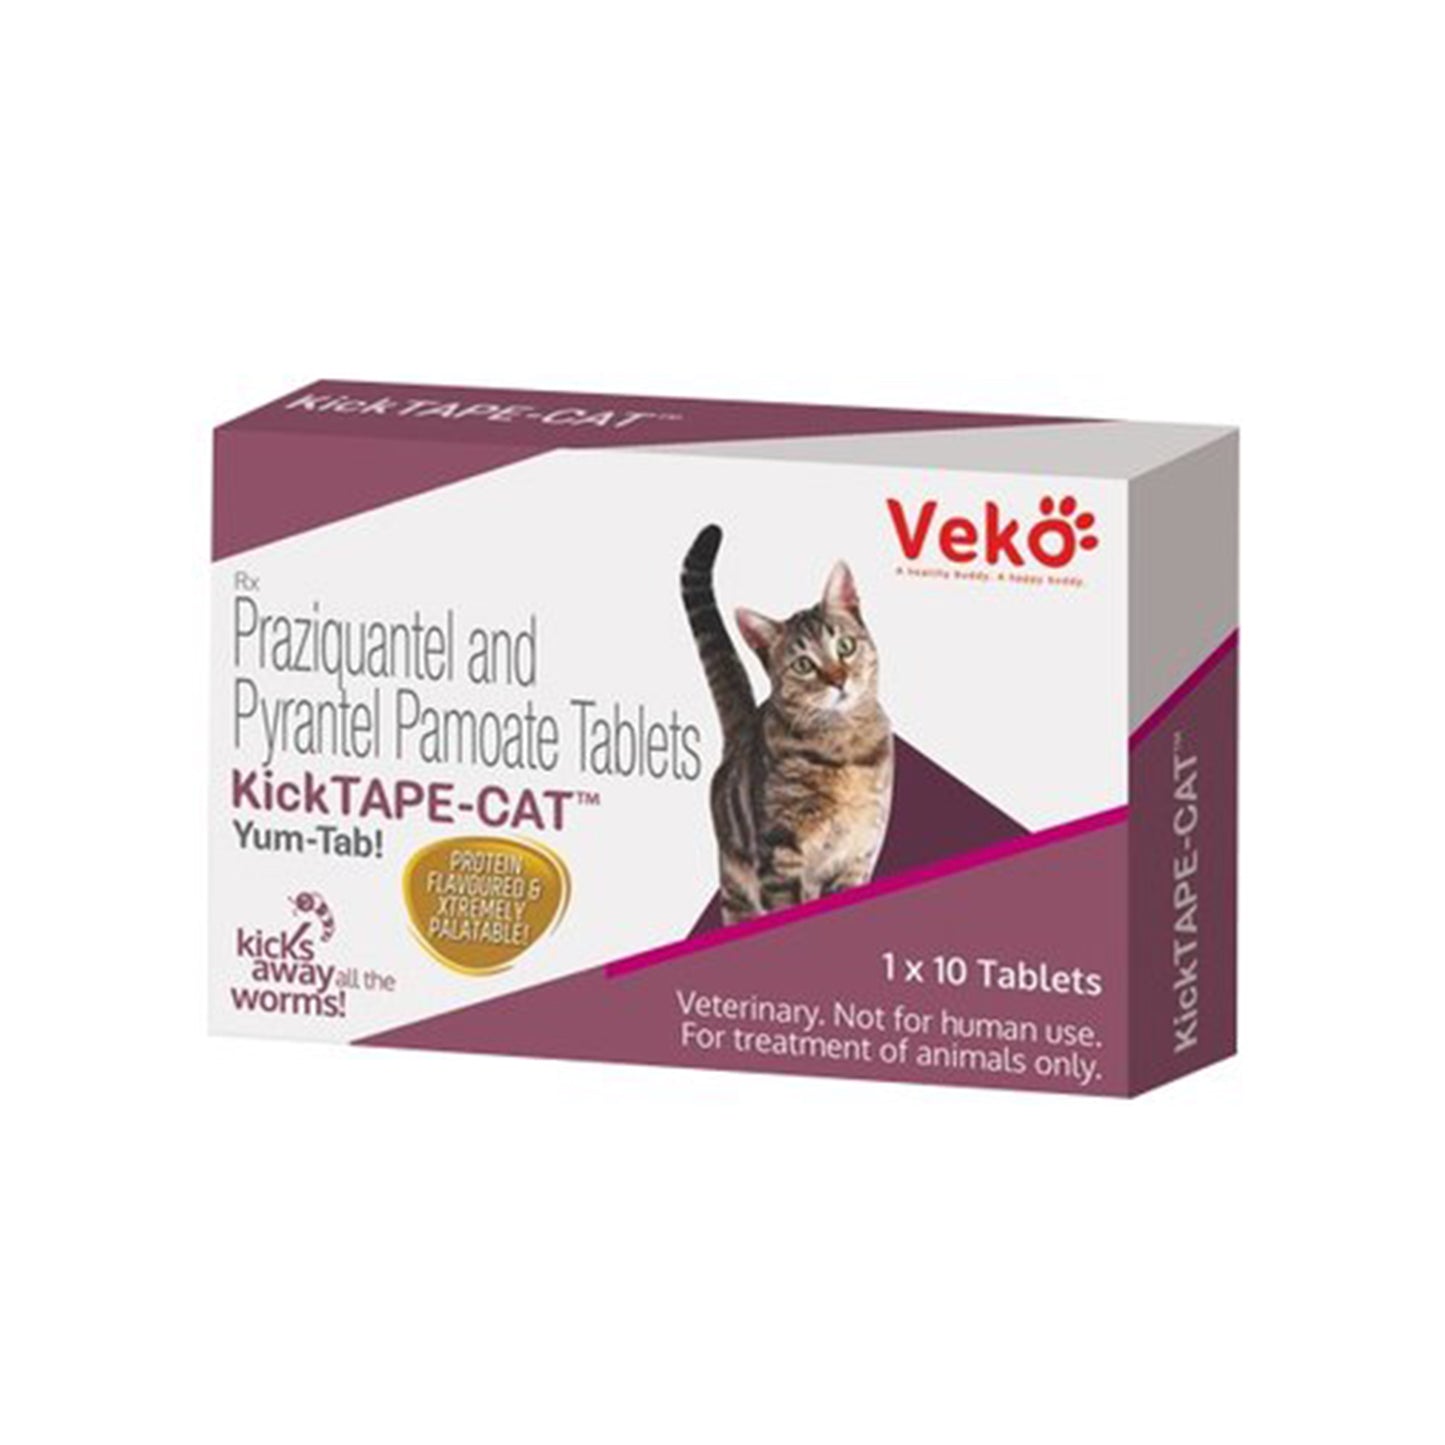 Veko - Kick Tape Cat Tablet